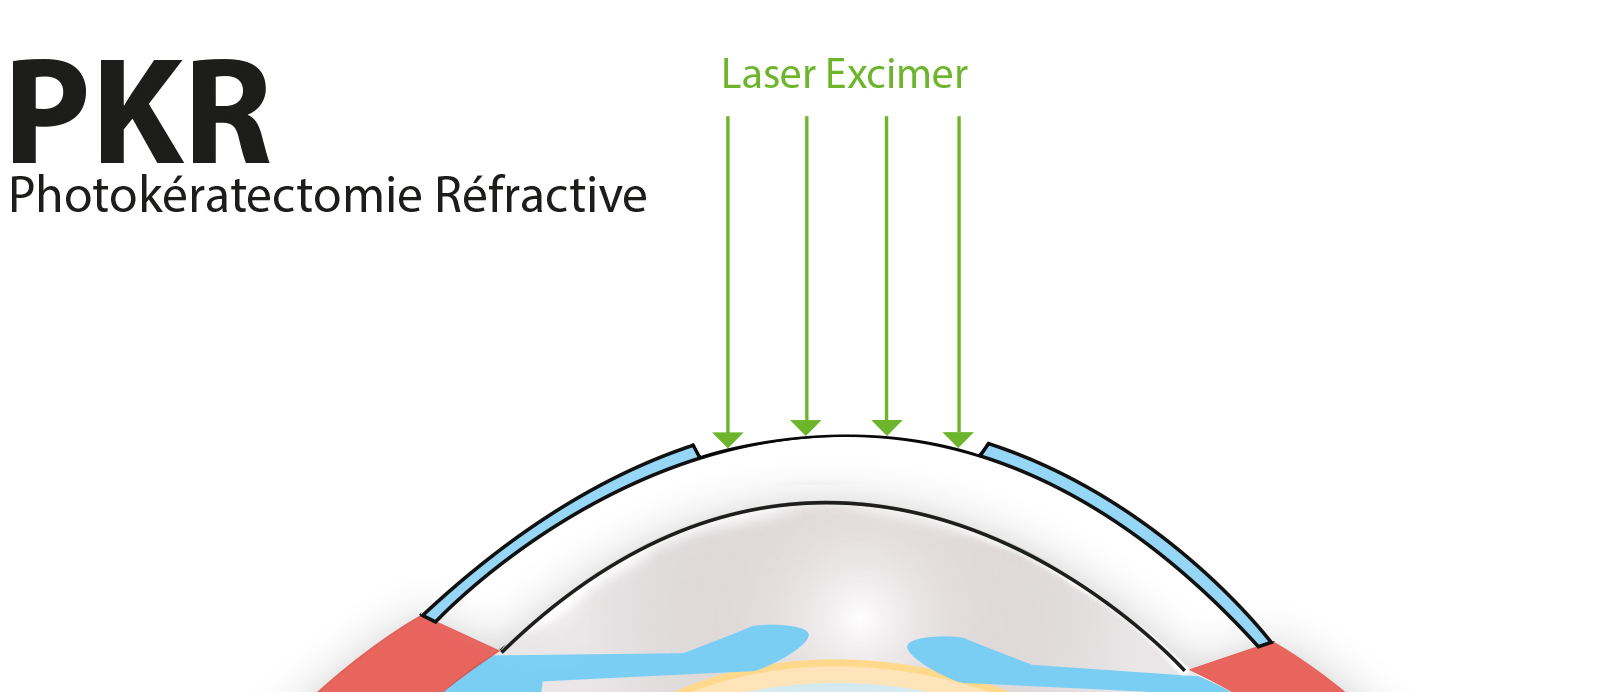 opération PKR myopie laser